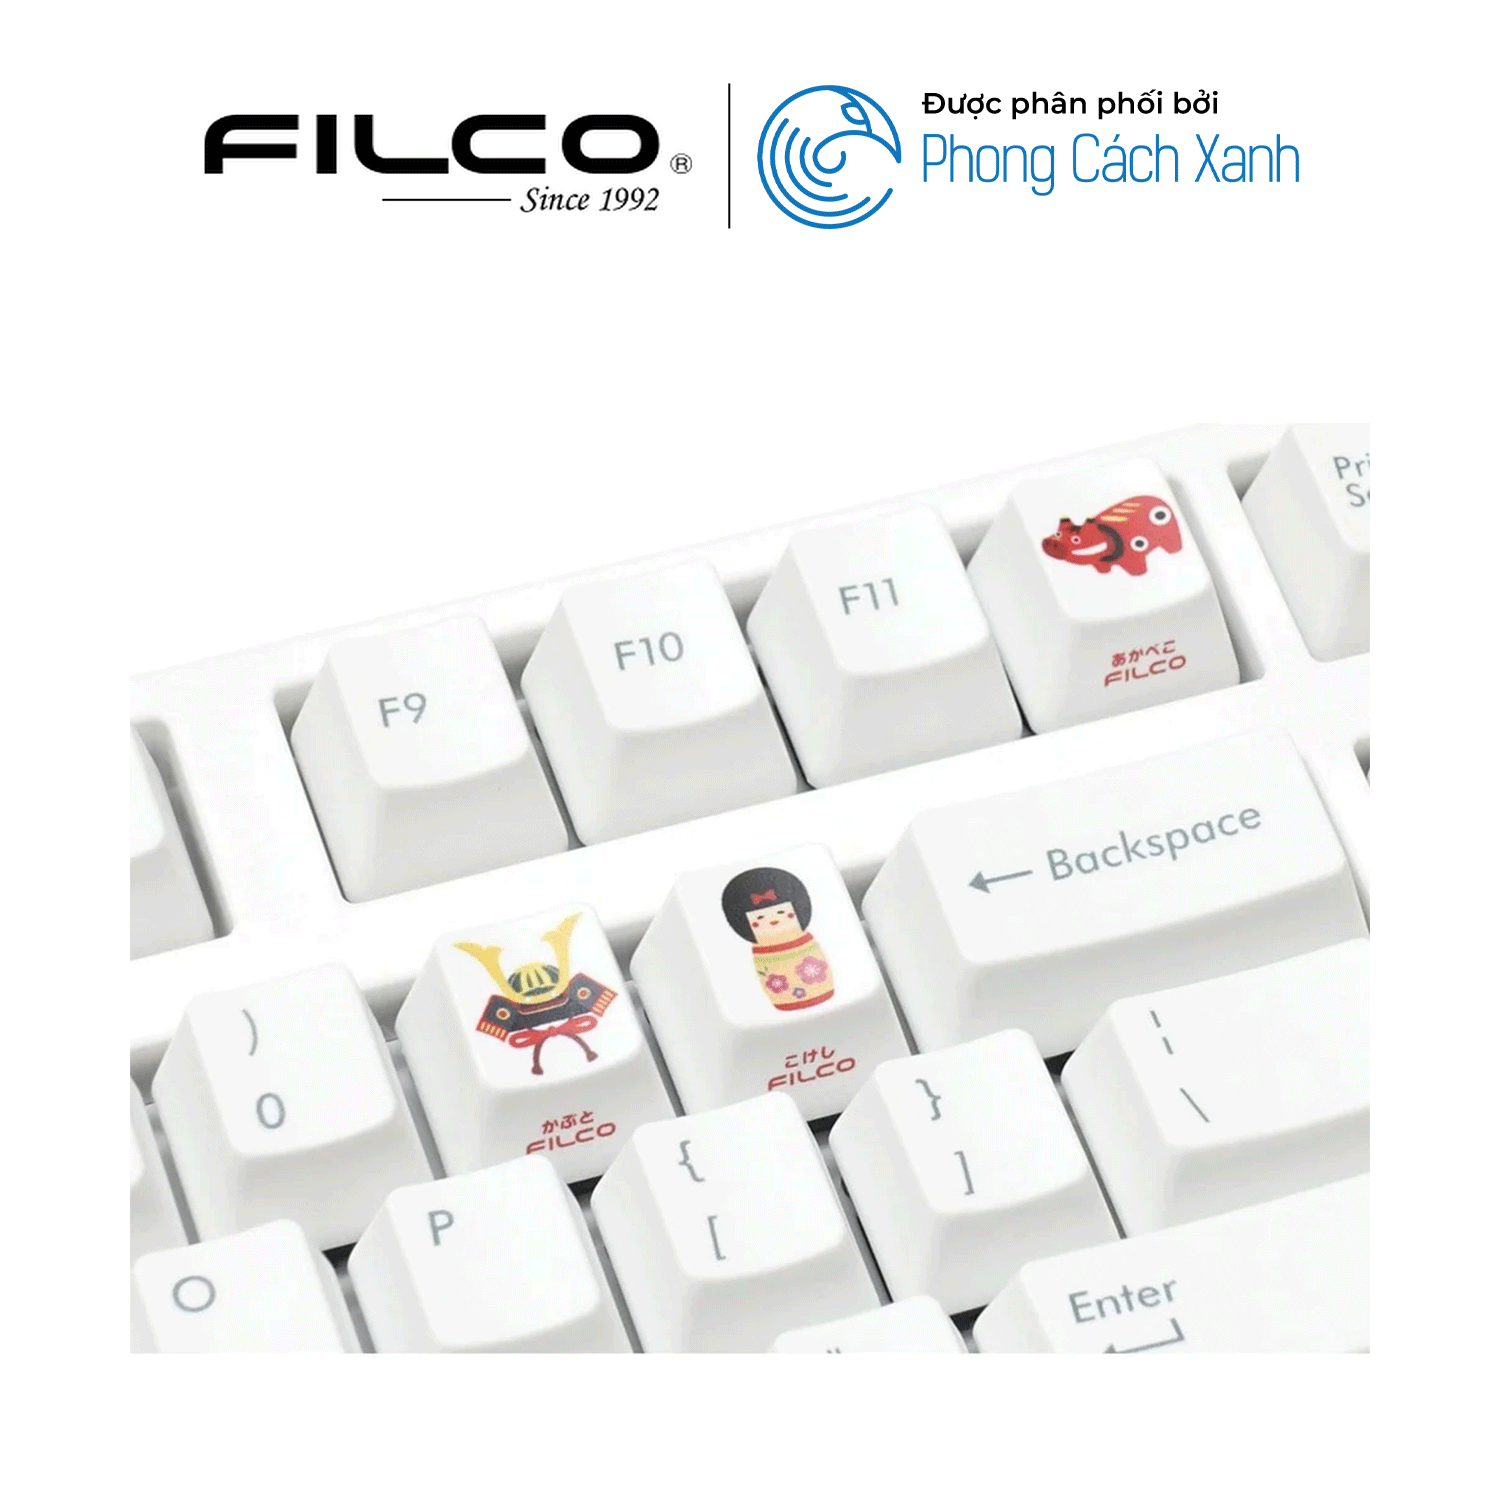 Bộ keycap Filco Lưu Niệm (9 keycap) - Hàng Chính Hãng